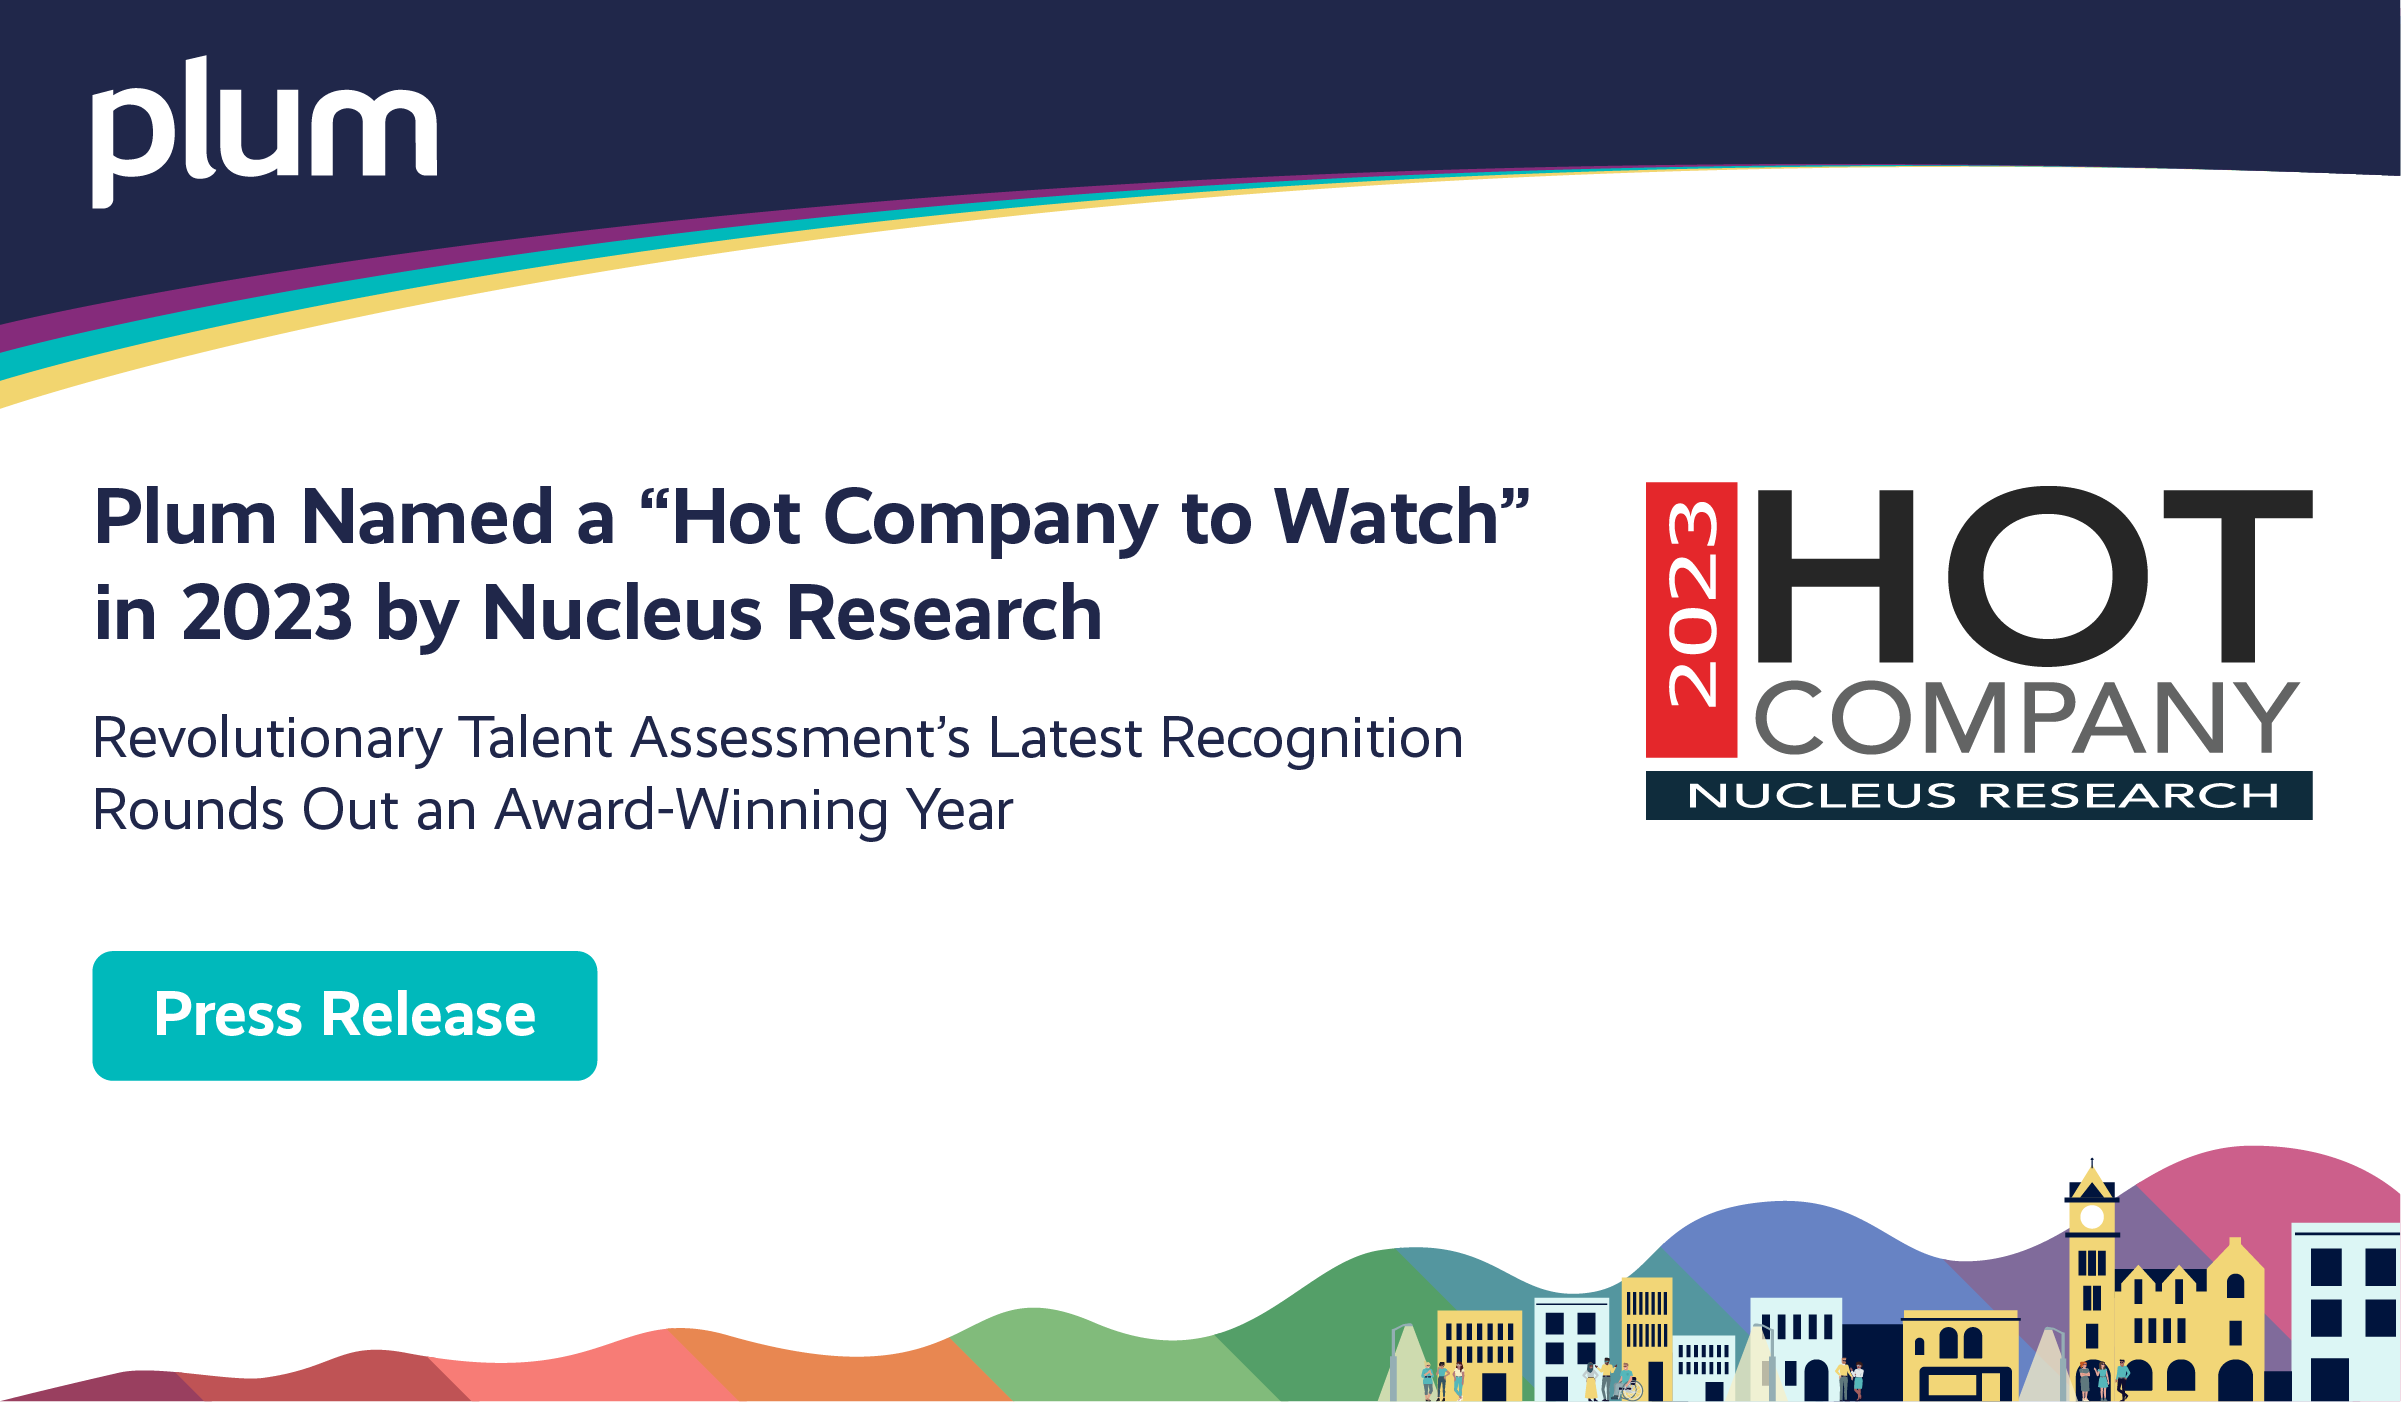 Hot Company to Watch Award